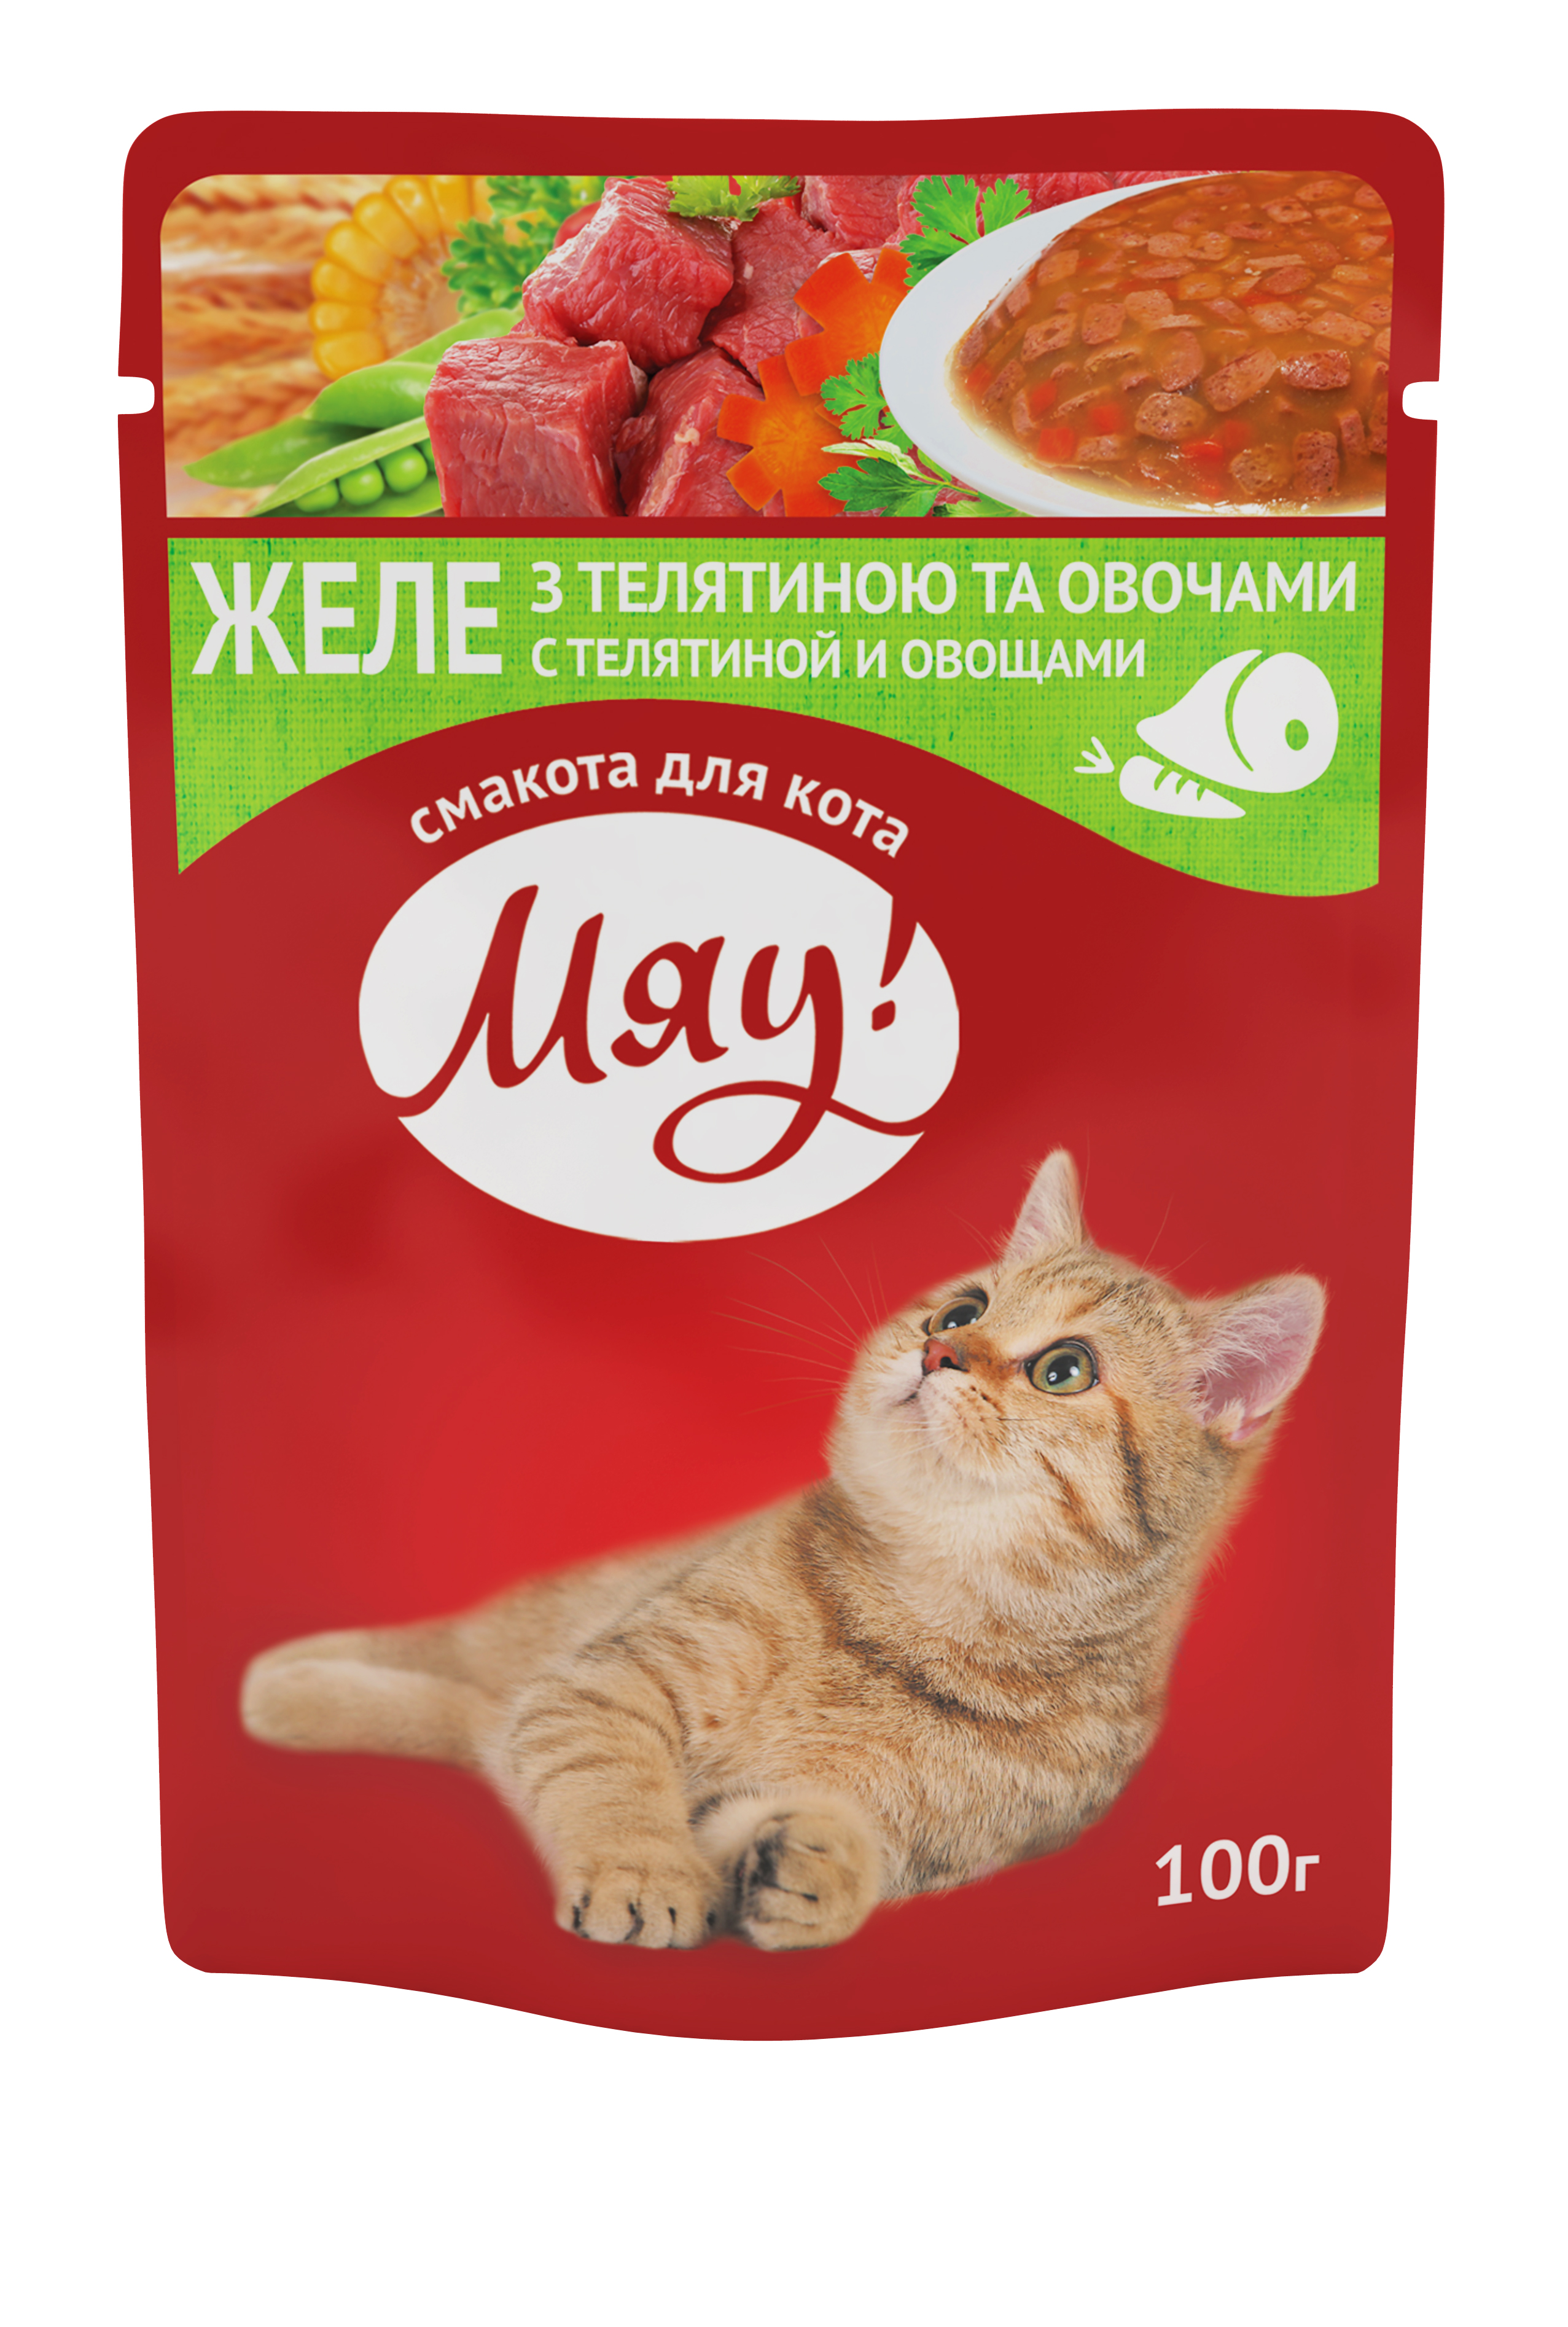 Консервы для взрослых кошек "Желе с телятиной и овощами", 100 грамм купить в Украине по недорогой цене - зоомагазин ZOOstar